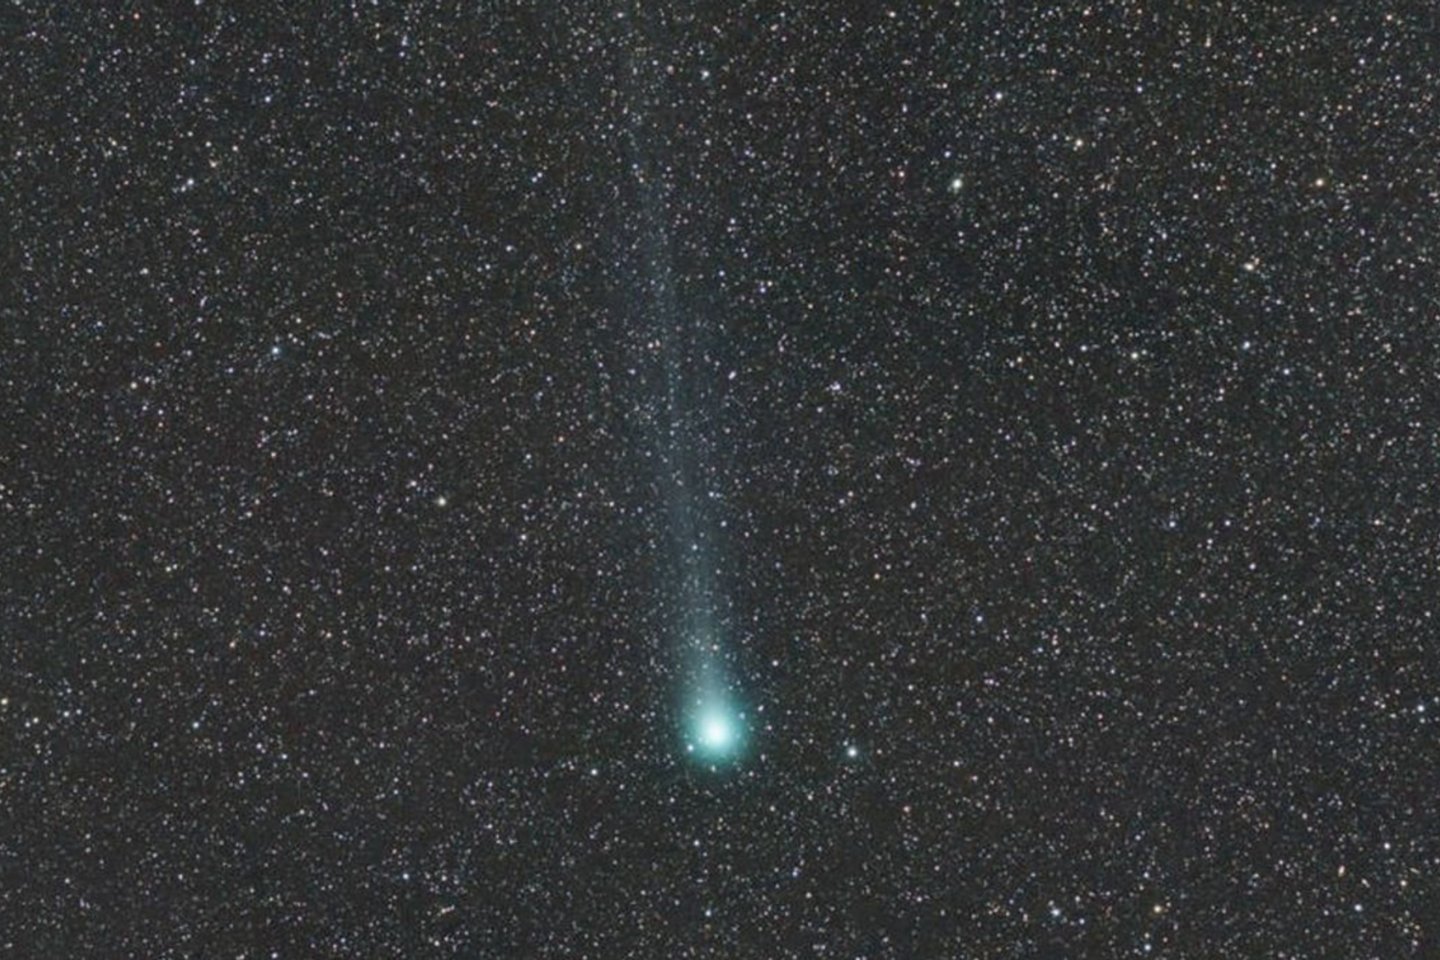 Kaip viena iš 400 „Jupiterio šeimos“ kometų – 46P/Wirtanen turi ilgą elipsinę orbitą, kurios afelis (tolimiausias taškas nuo Saulės) yra šalia Jupiterio. <br>USA Today nuotr. 